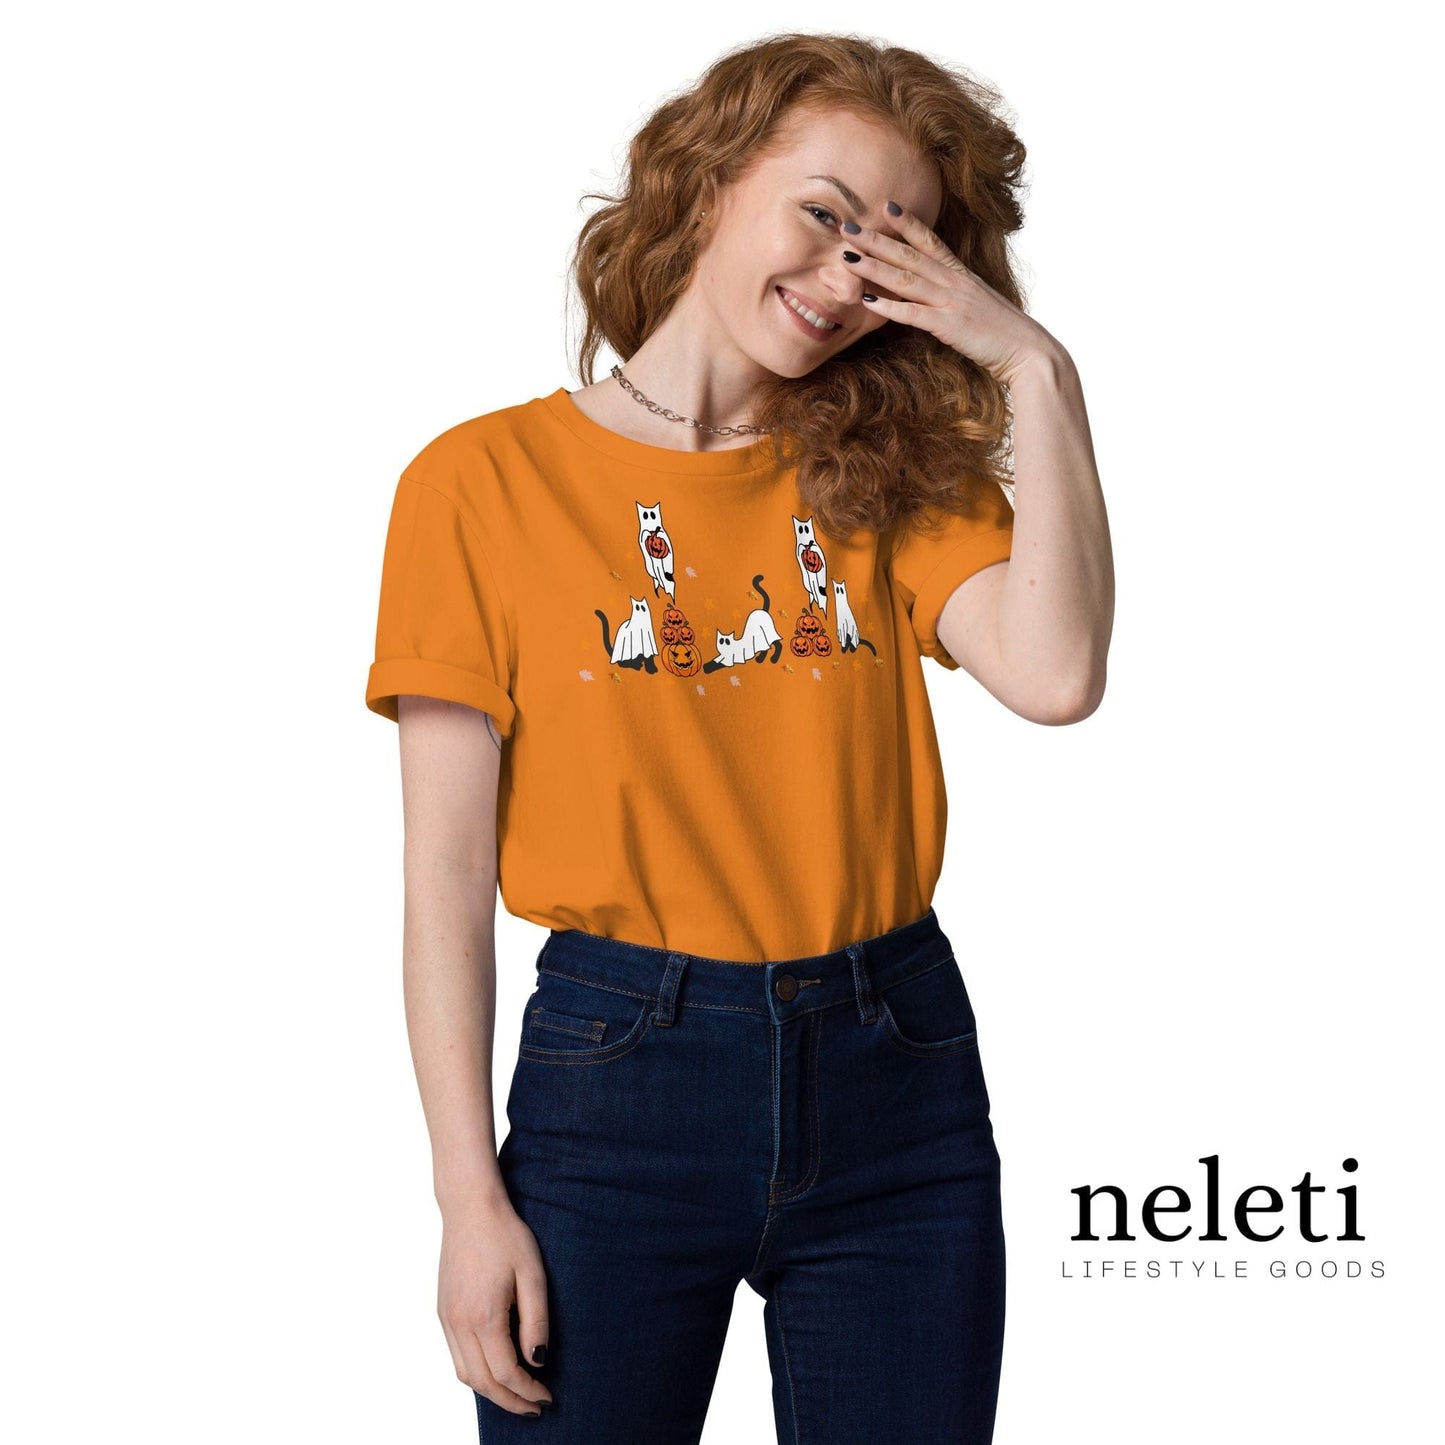 neleti.com-halloween-orange-shirt-for-cat-lover